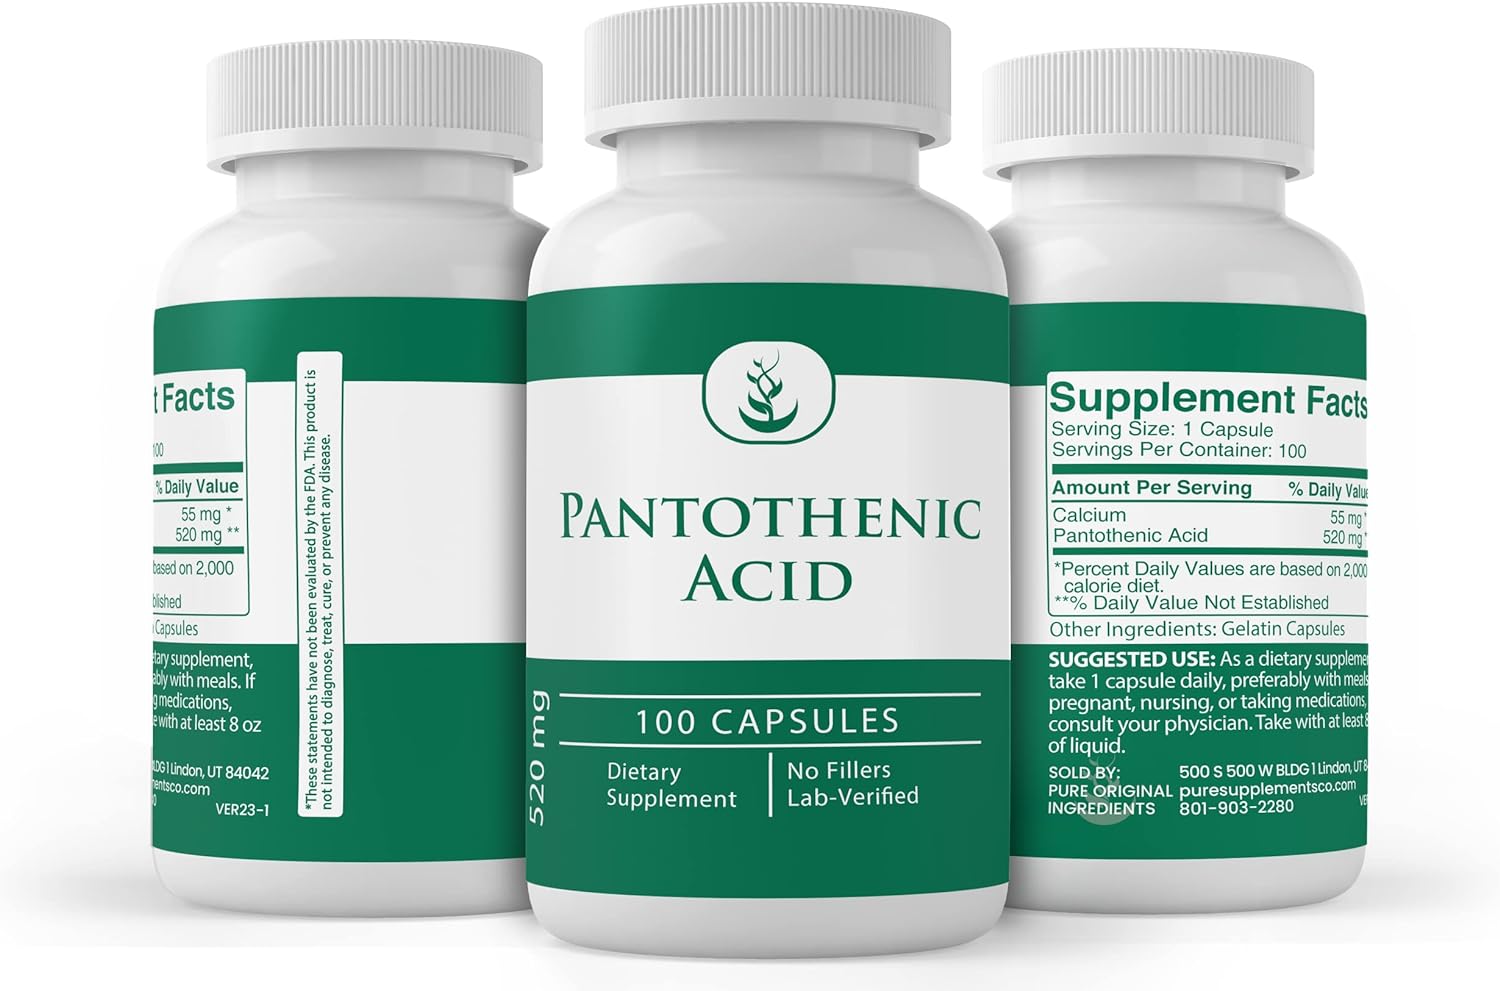 PURE ORIGINAL INGREDIENTS Pantothenic Acid (100 Capsules) Pure, Vitamin B5, Calcium Supplement